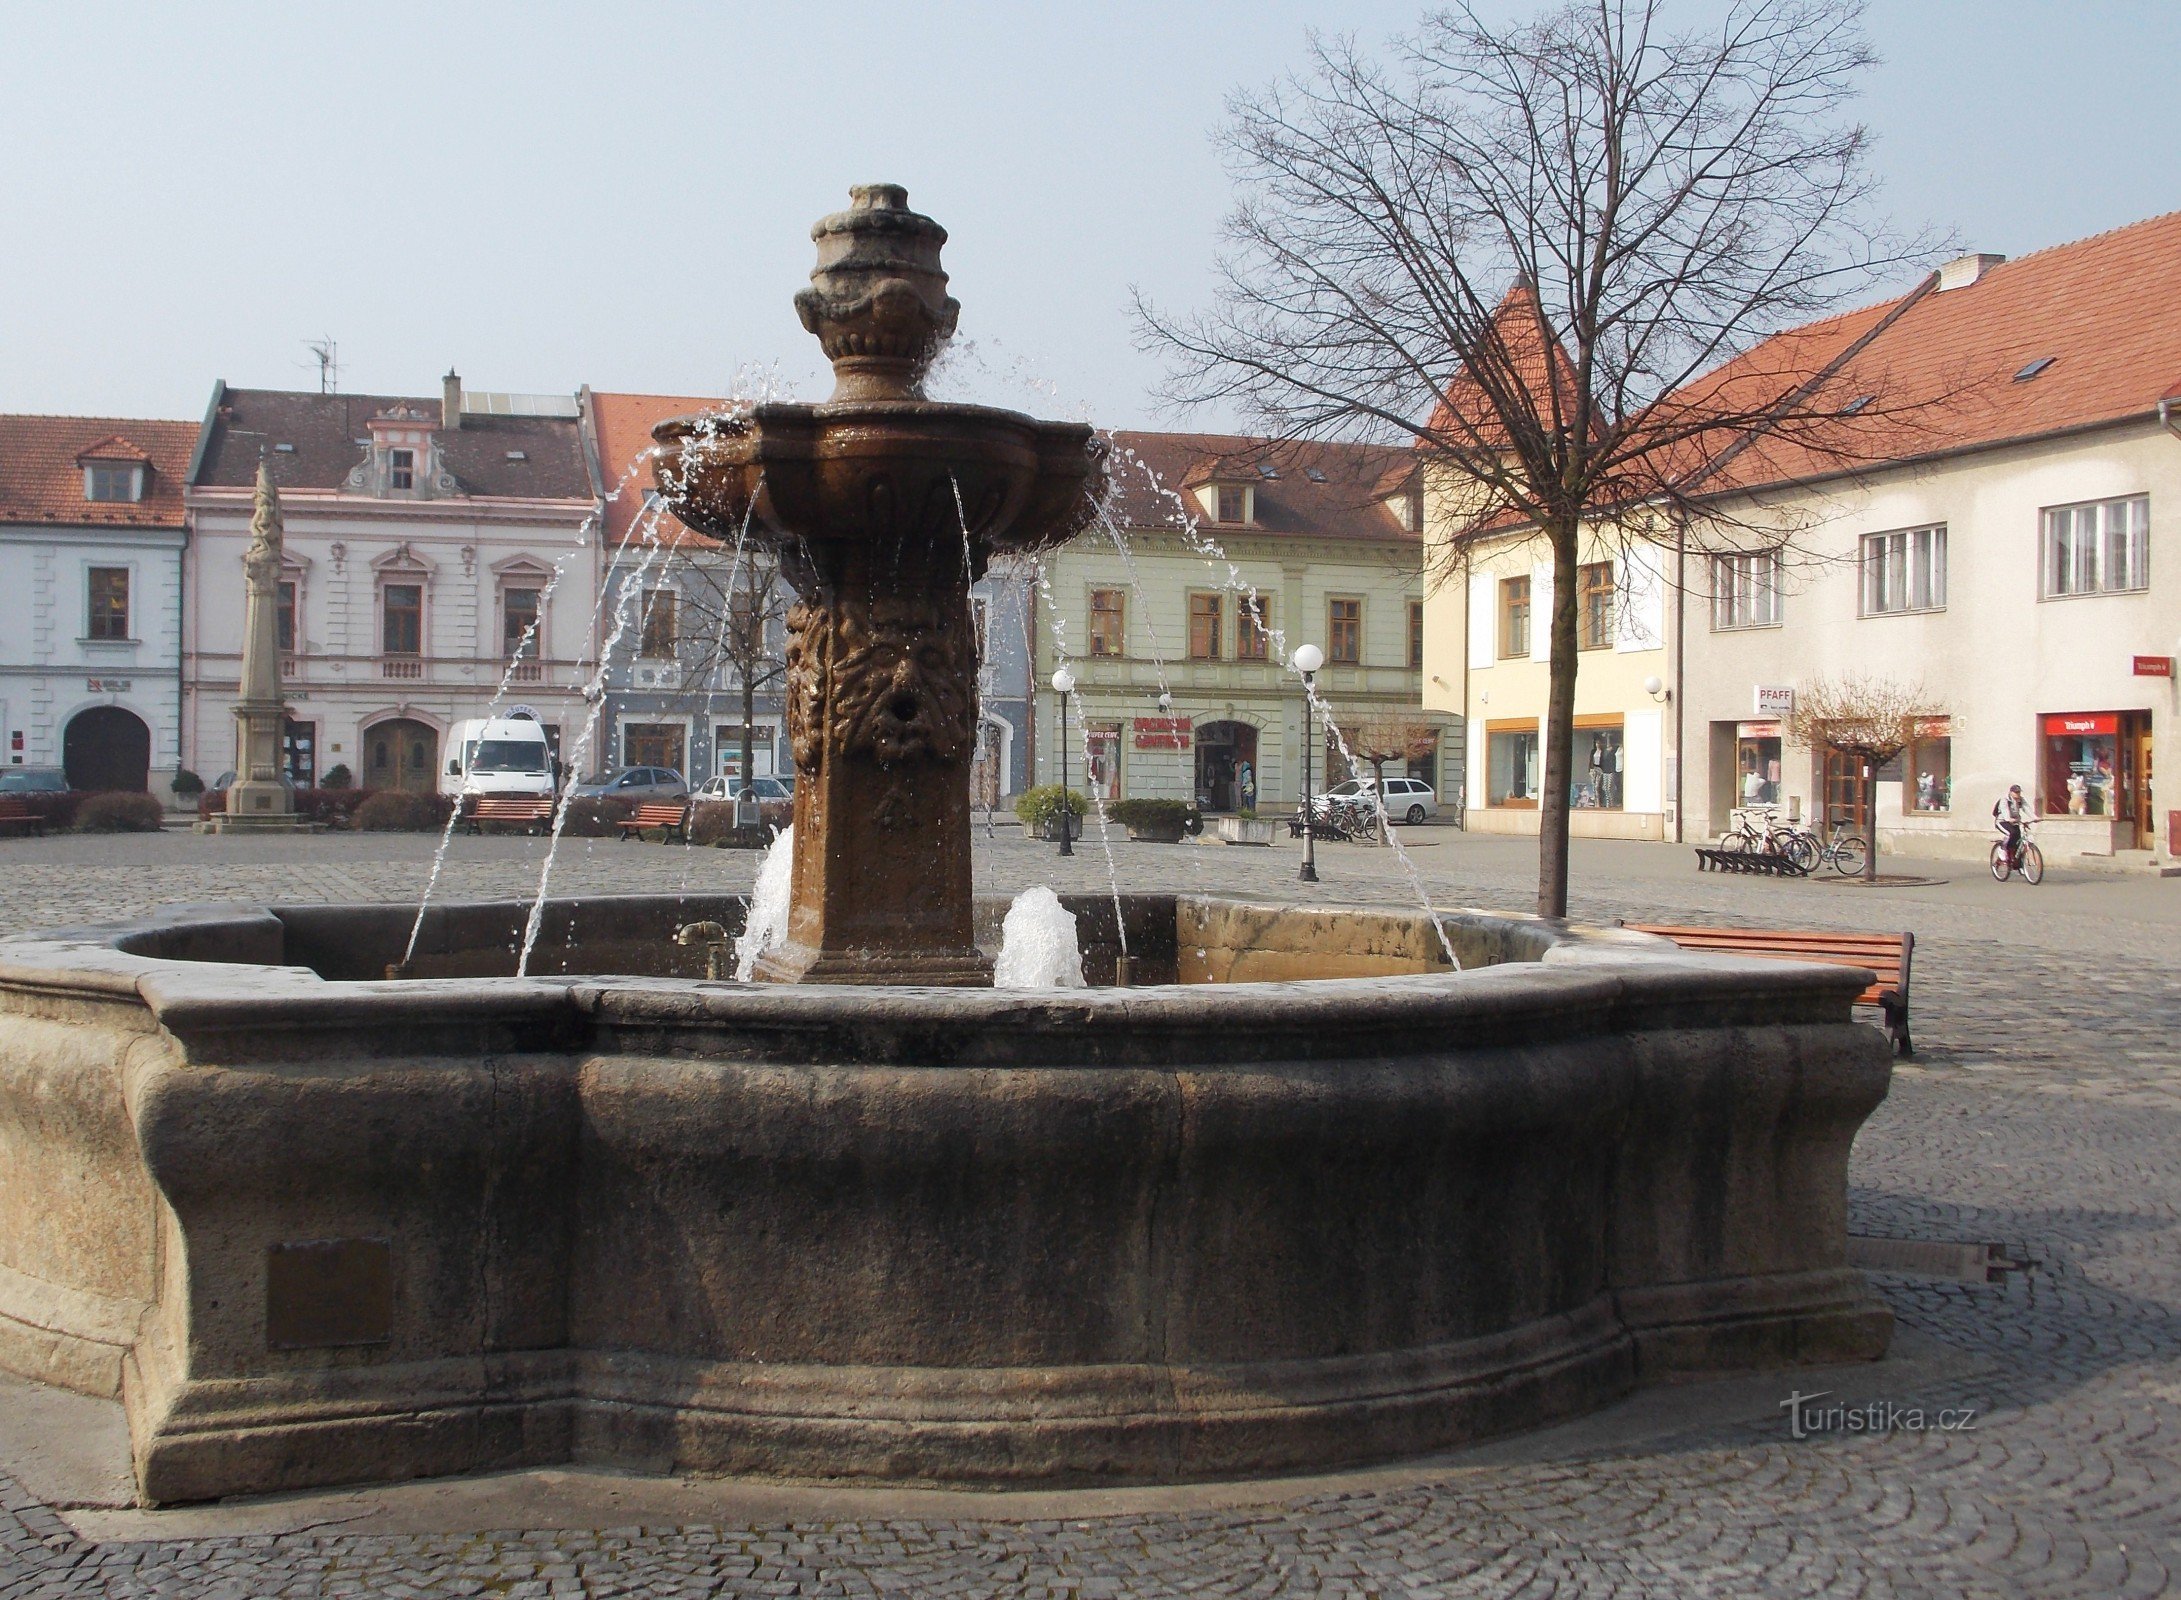 Uherské Hradiště市の変化